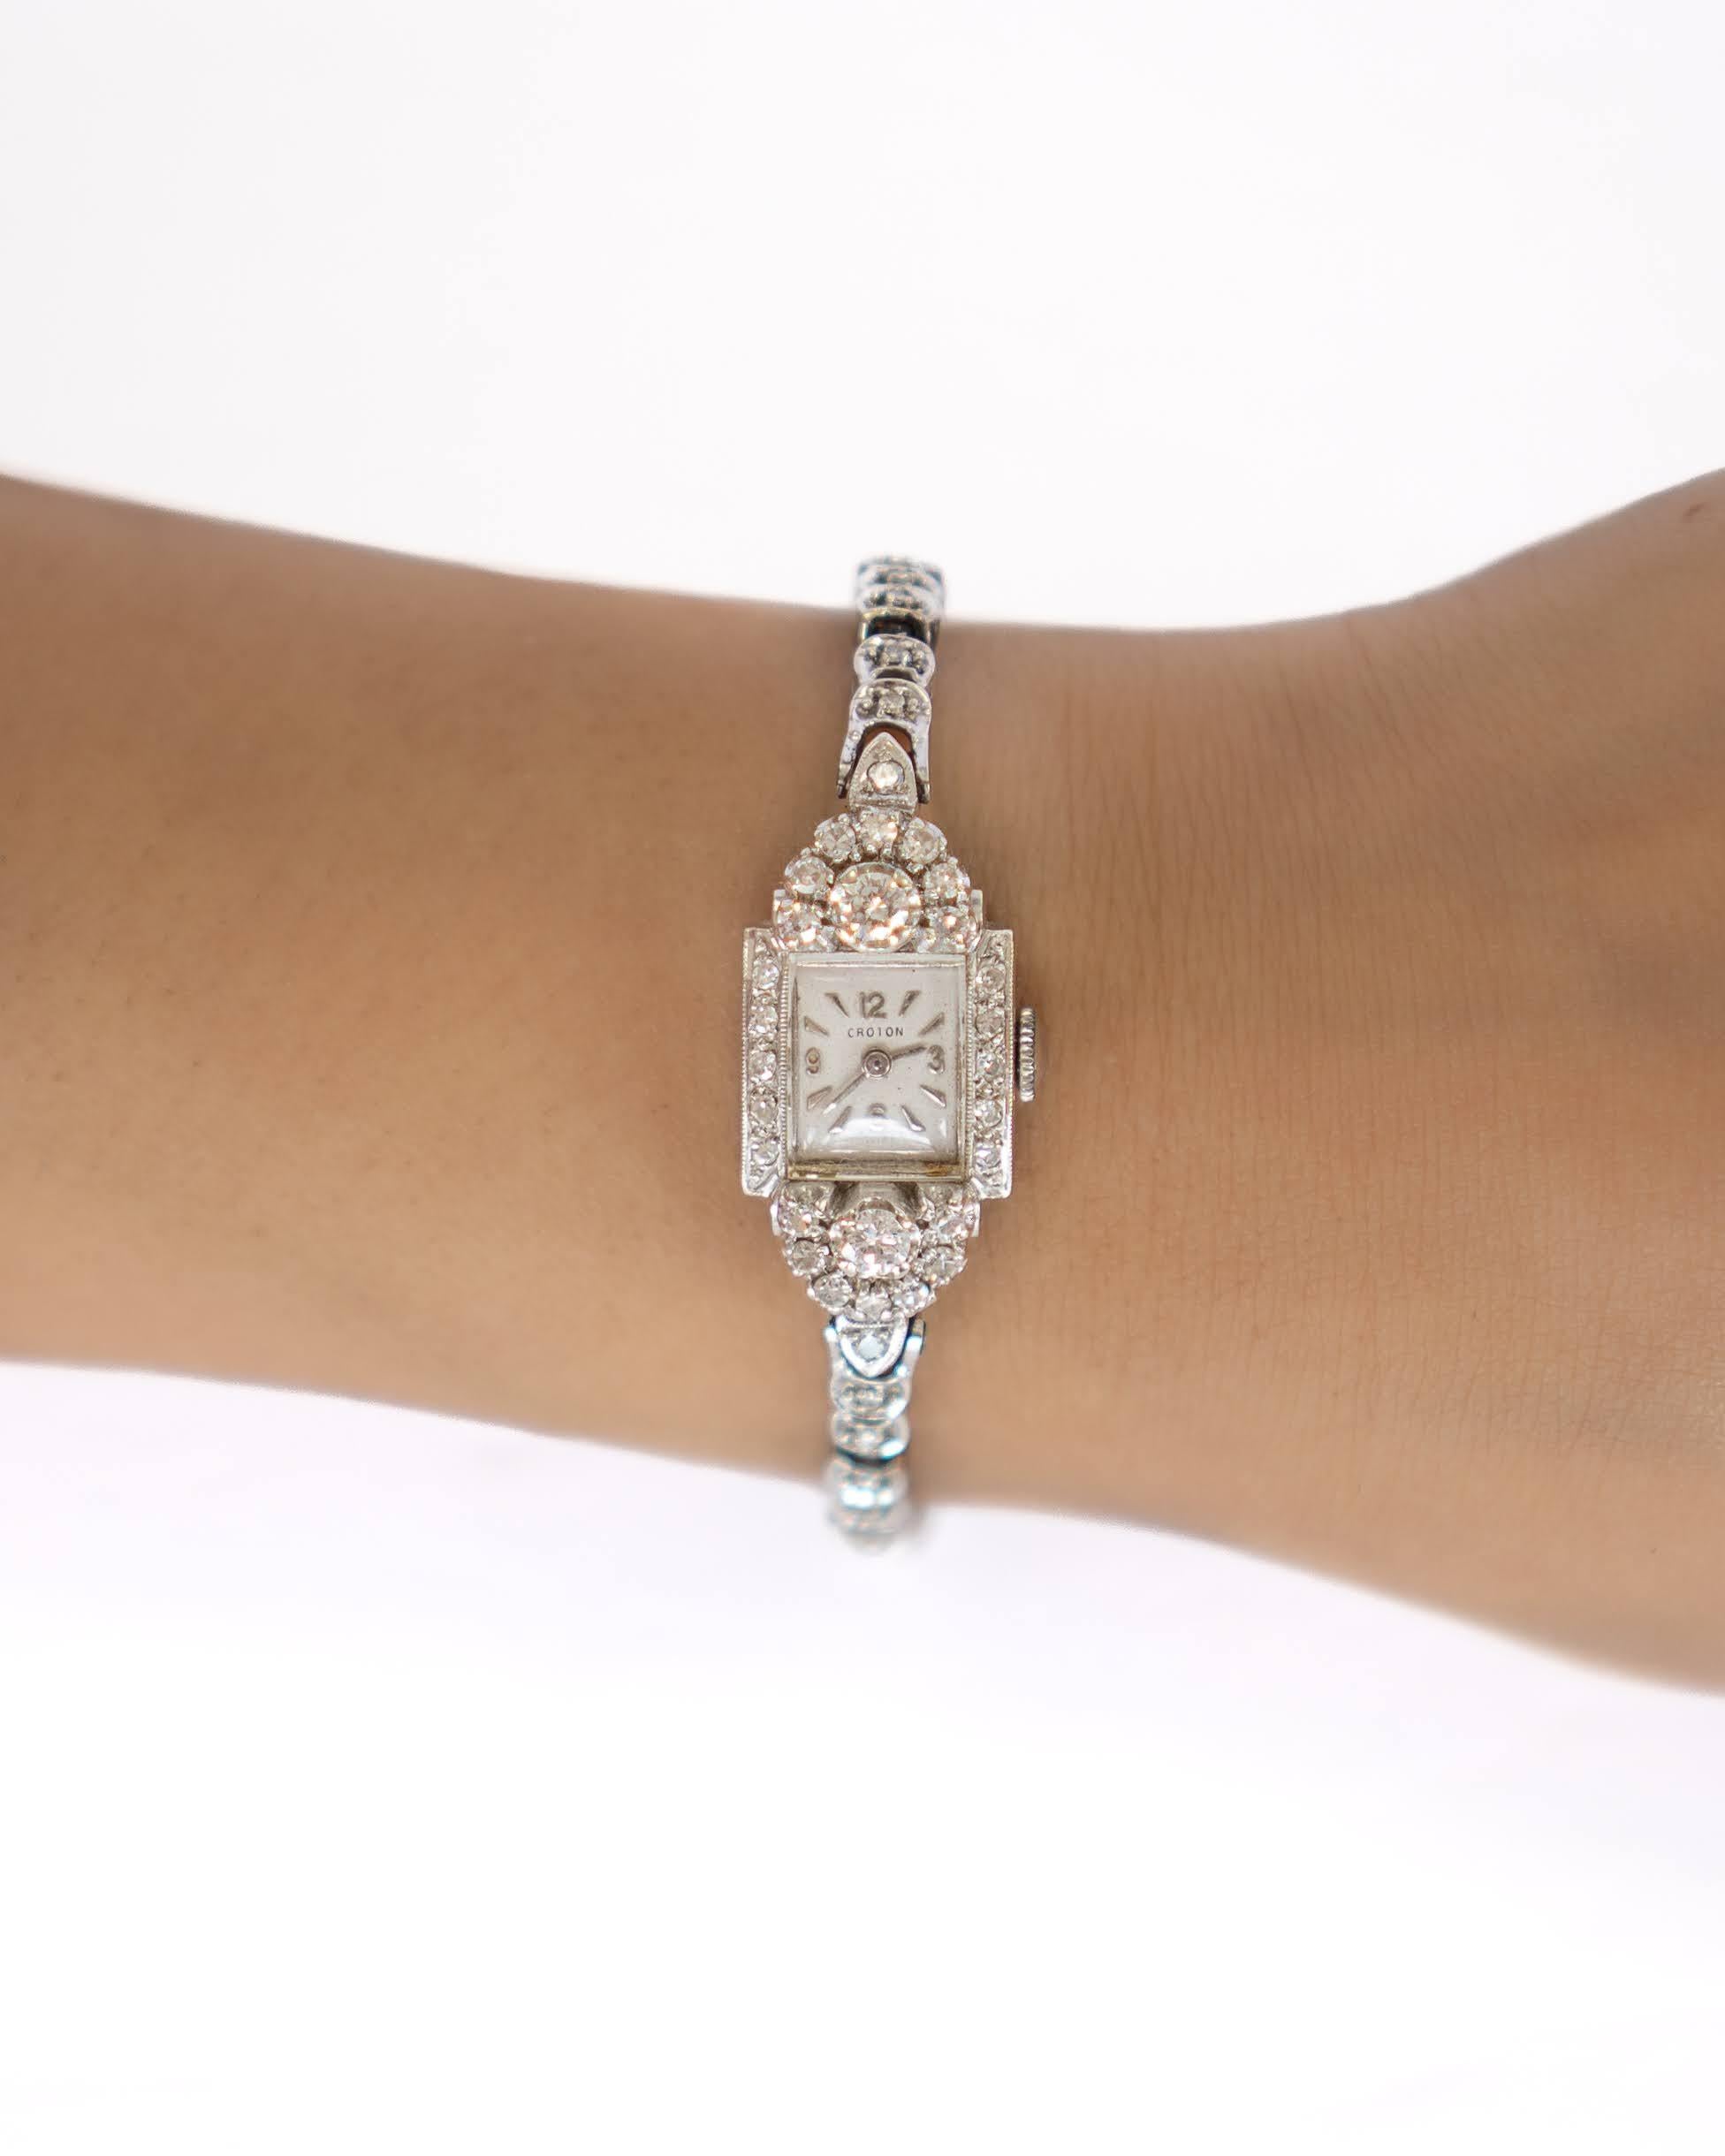 Eine atemberaubende Ladies True Vintage 14k Weißgold Croton Diamant Uhr.
Der Vintage-Patina-Look ist etwas, das von den meisten Käufern von Vintage-Schmuck gewünscht wird. Wir sind glücklich, eine kostenlose vollständige Politur auf dieser Uhr auf